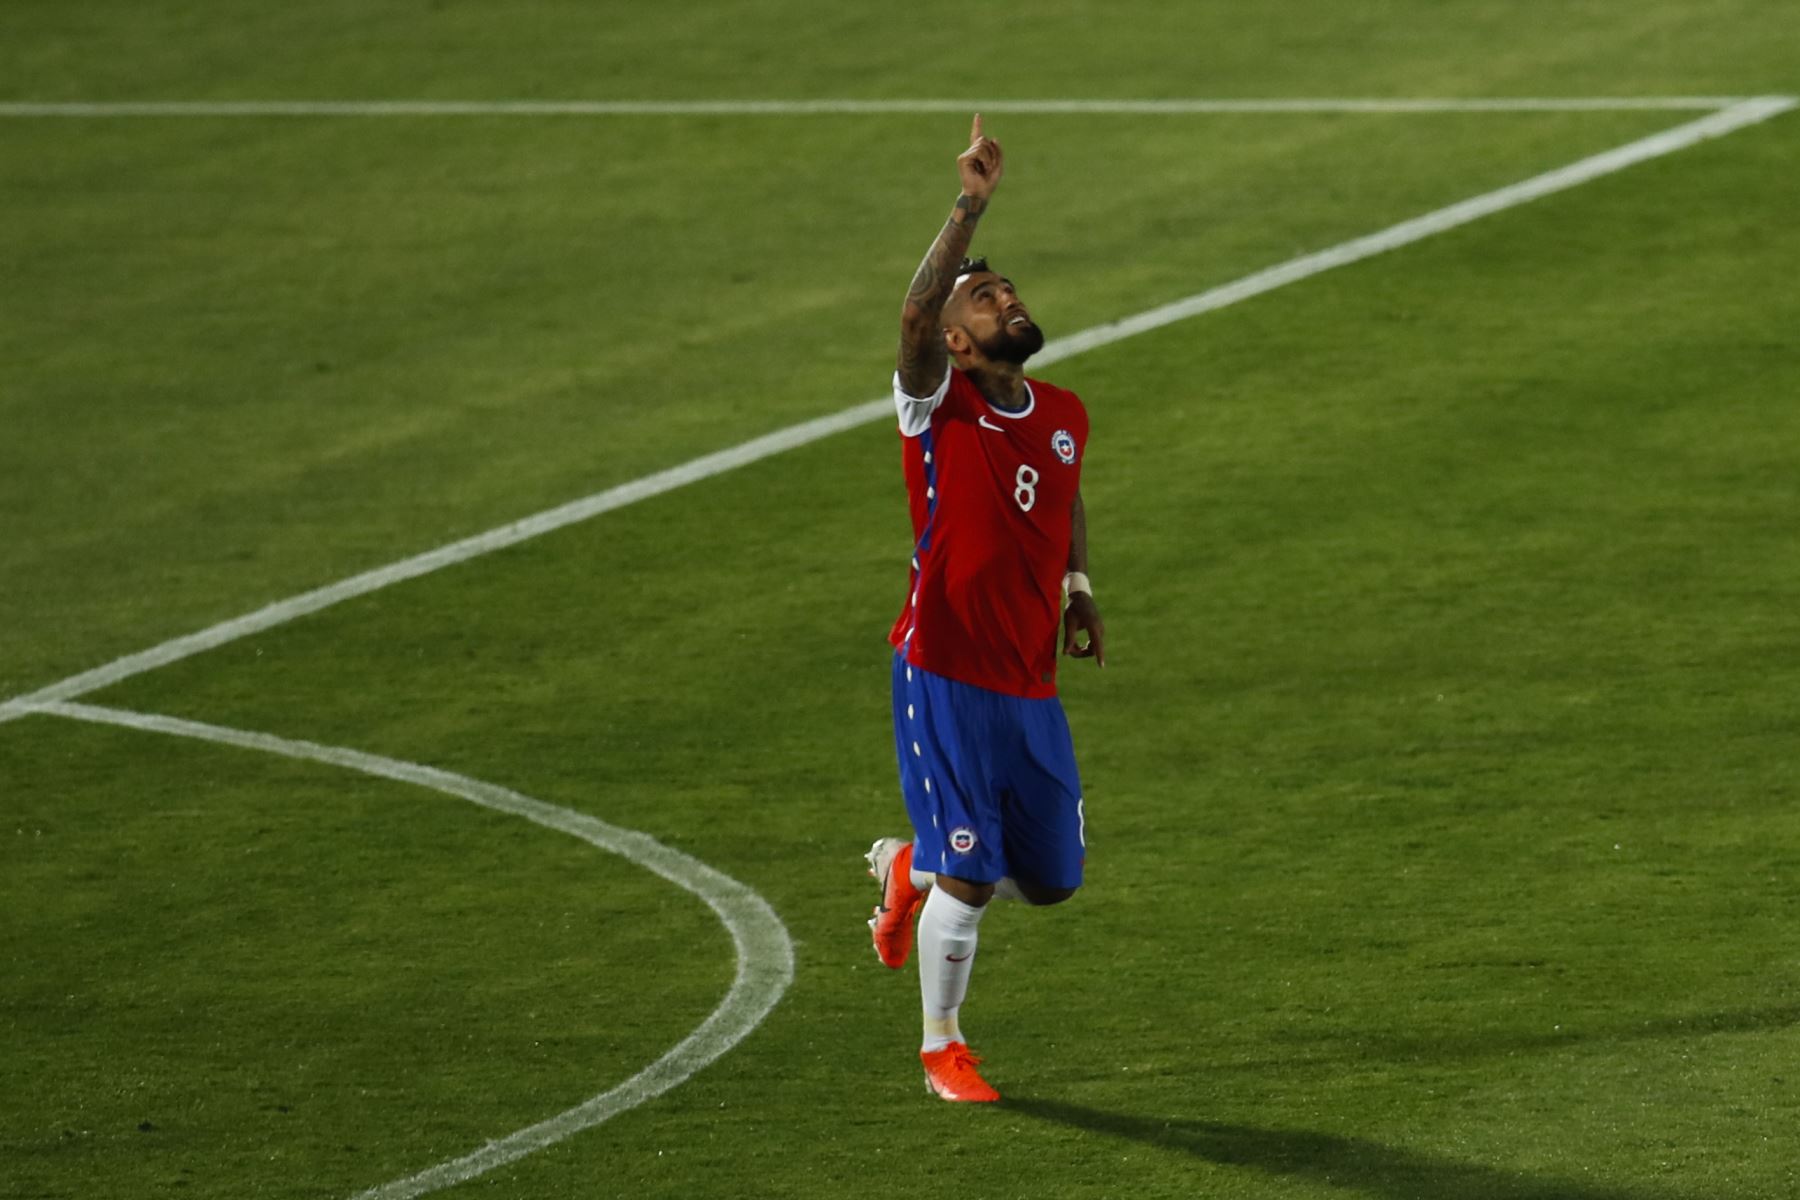 El chileno Arturo Vidal celebra tras anotar contra Colombia durante partido por Clasificatorias Qatar 2022, en el Estadio Nacional de Santiago. Foto: AFP